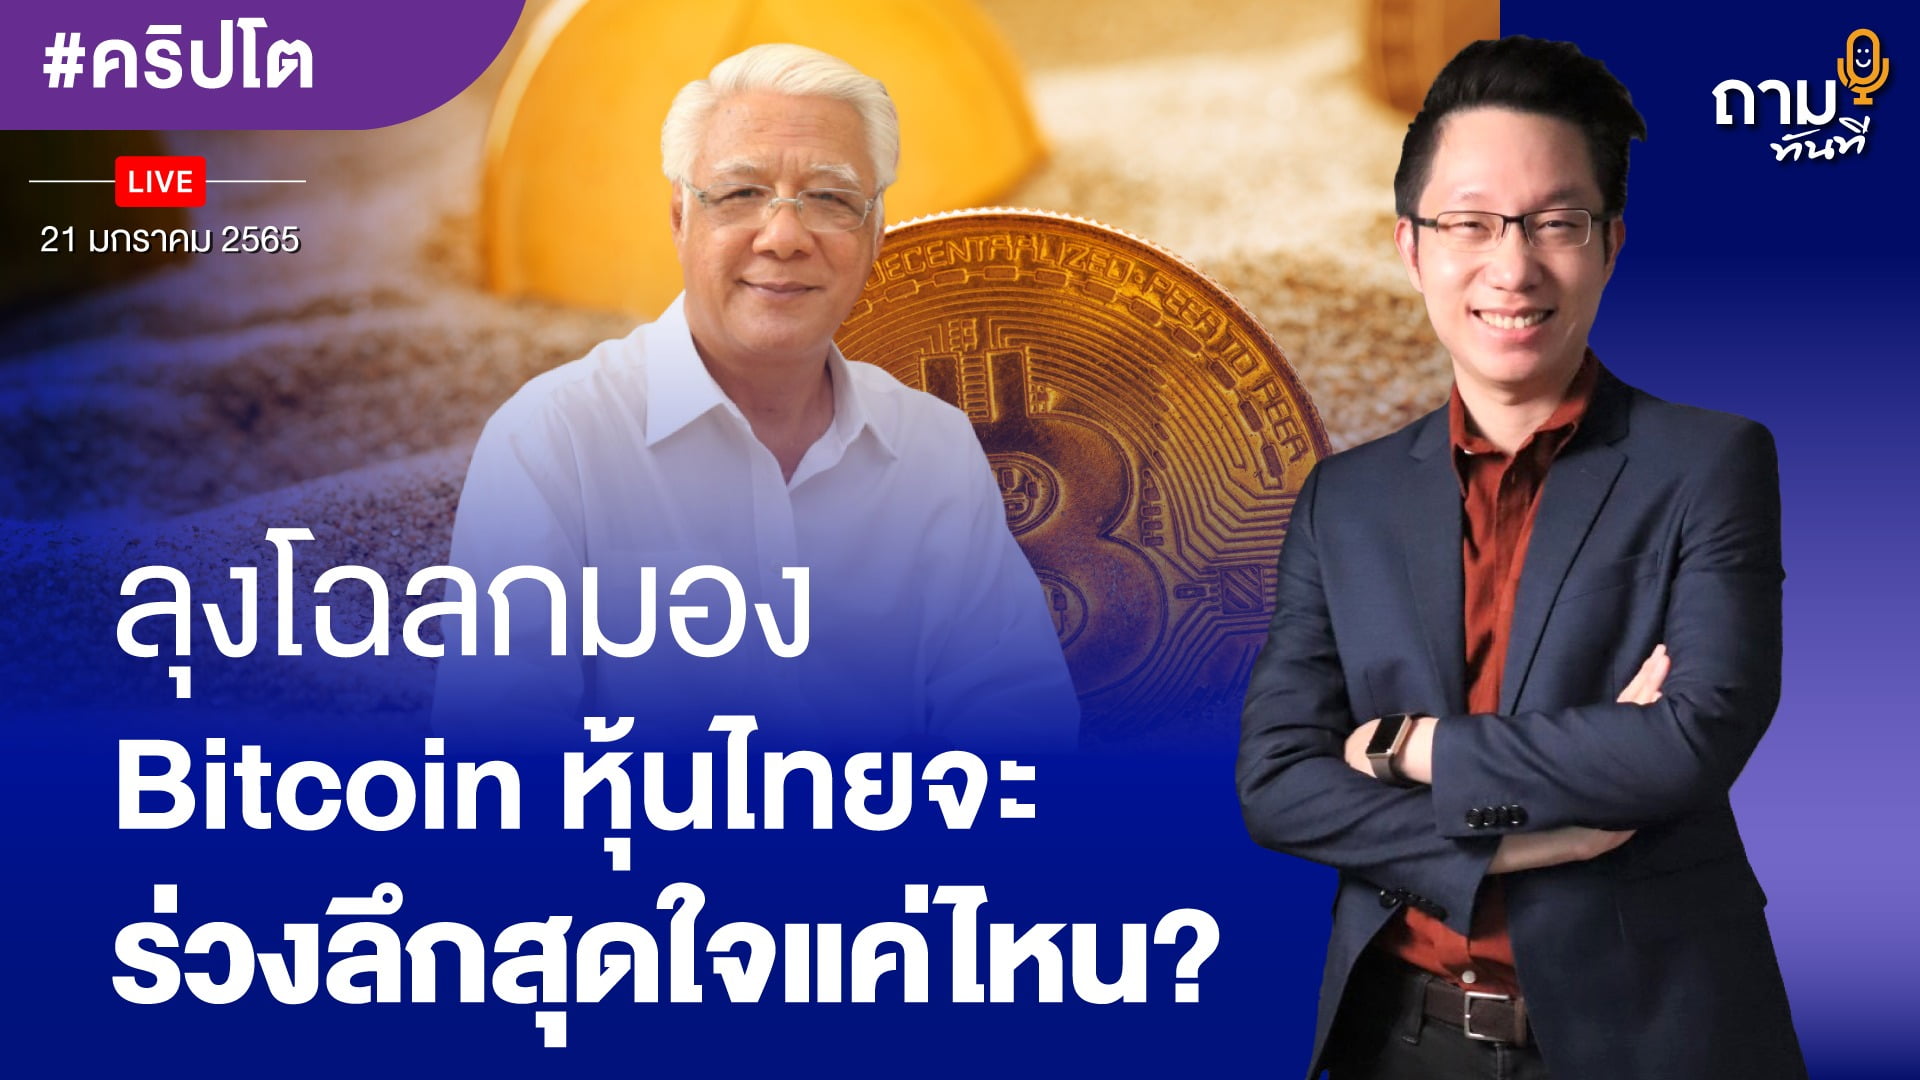 ลุงโฉลกมอง Bitcoin หุ้นไทยจะร่วงลึกสุดใจได้แค่ไหน?